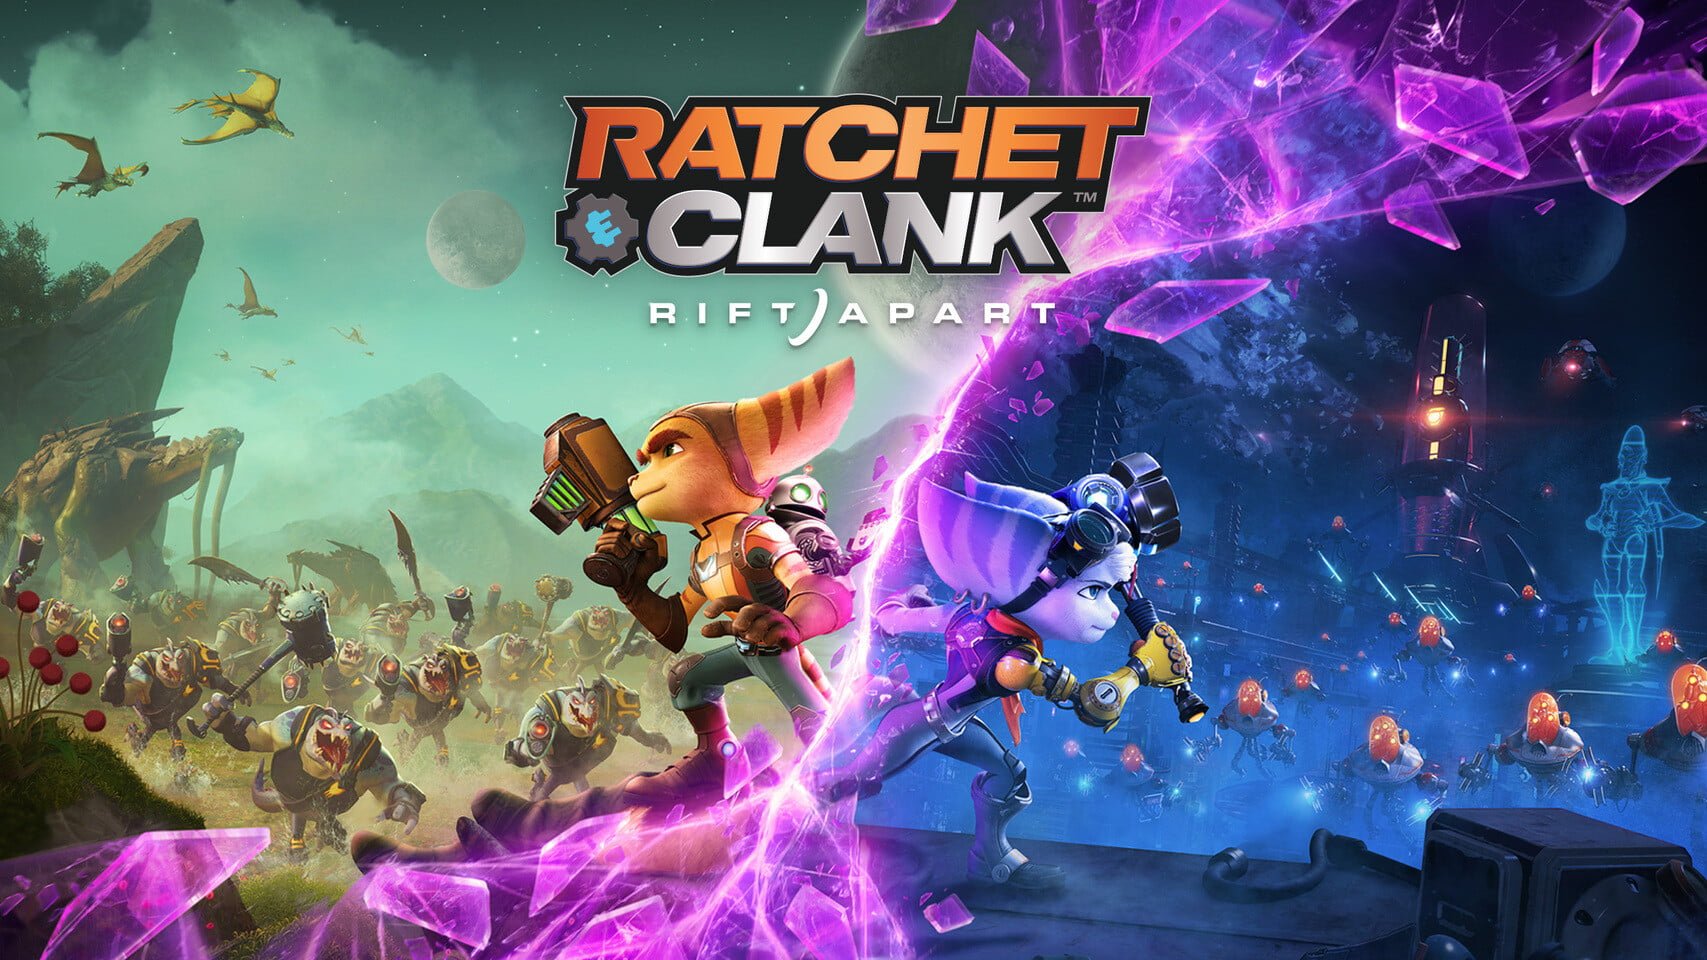 AMD opublikowało specjalną wersję sterowników graficznych dedykowanych dla gry "Ratchet & Clank: Rift Apart" AMD opublikowalo specjalna wersje sterownikow graficznych dedykowanych dla gry Ratchet Clank Rift Apart